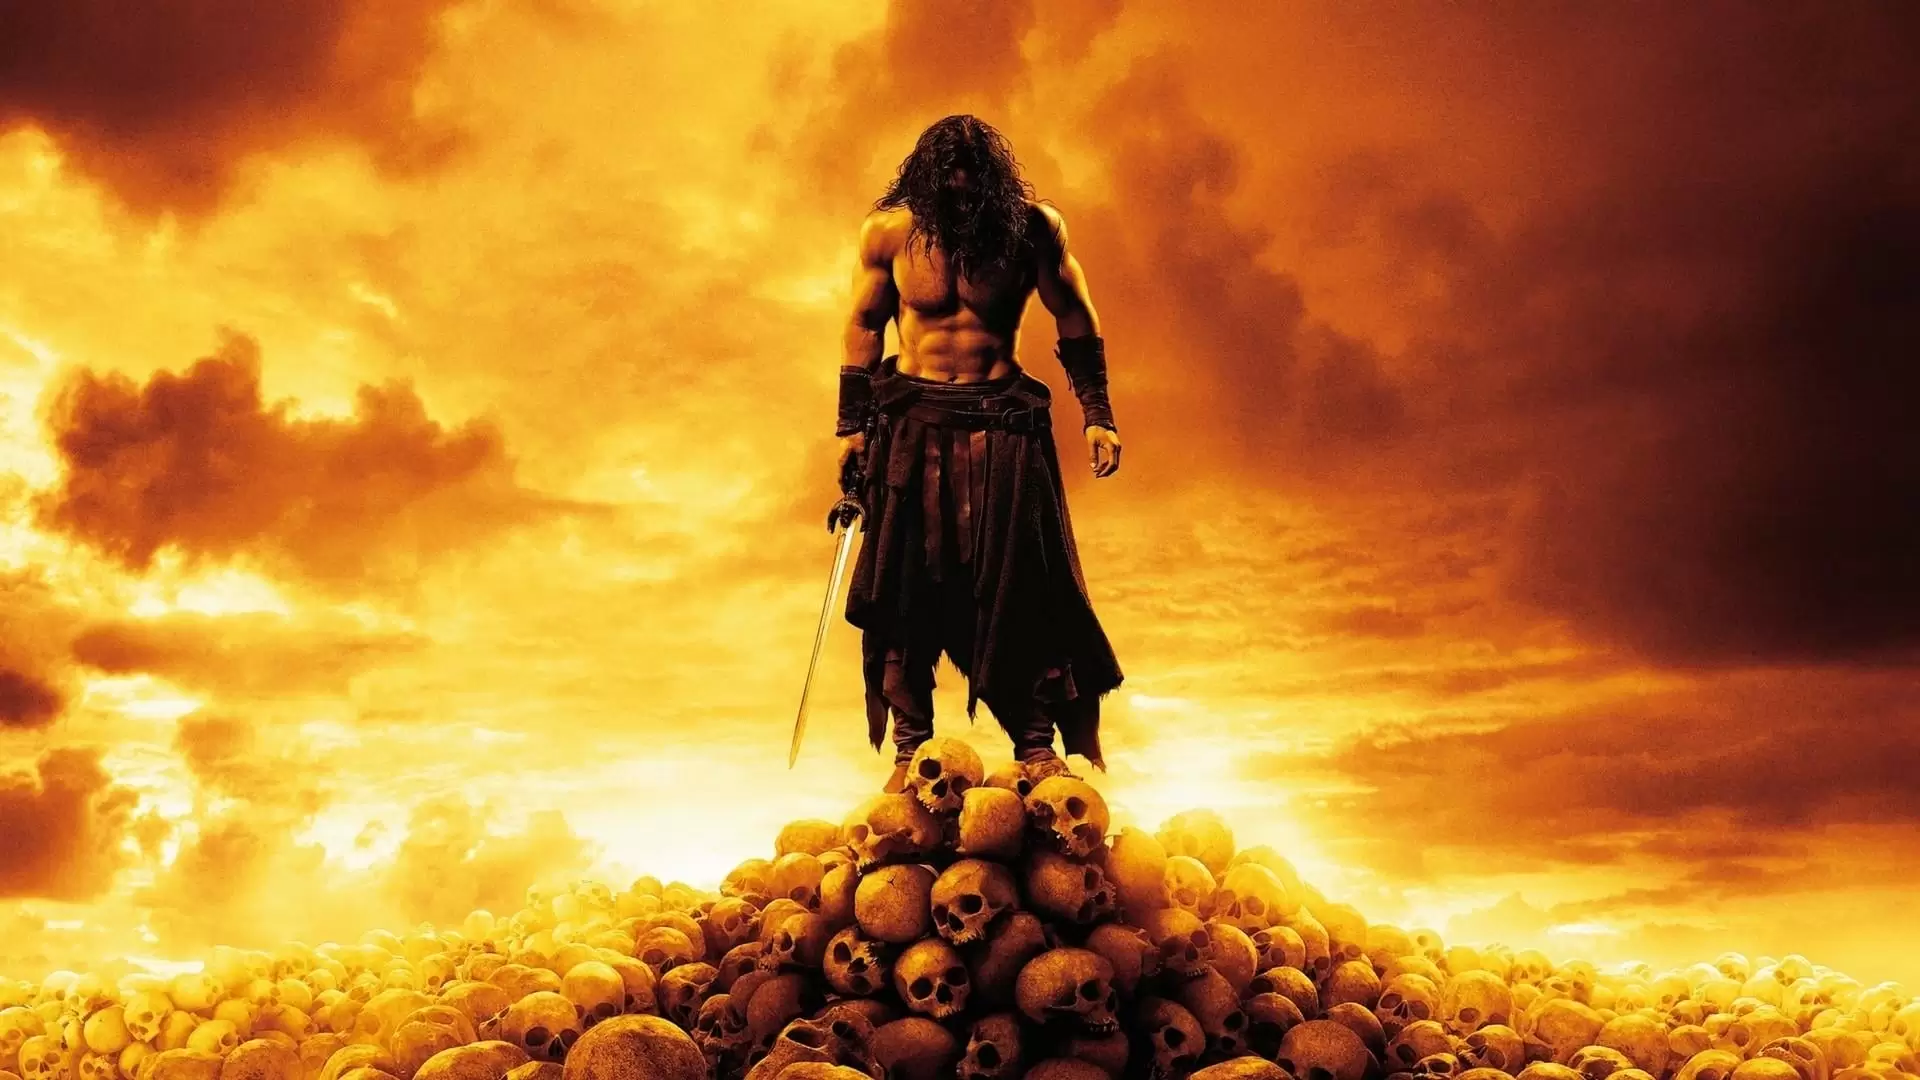 دانلود فیلم Conan the Barbarian 2011 (کونان بربر) با زیرنویس فارسی و تماشای آنلاین